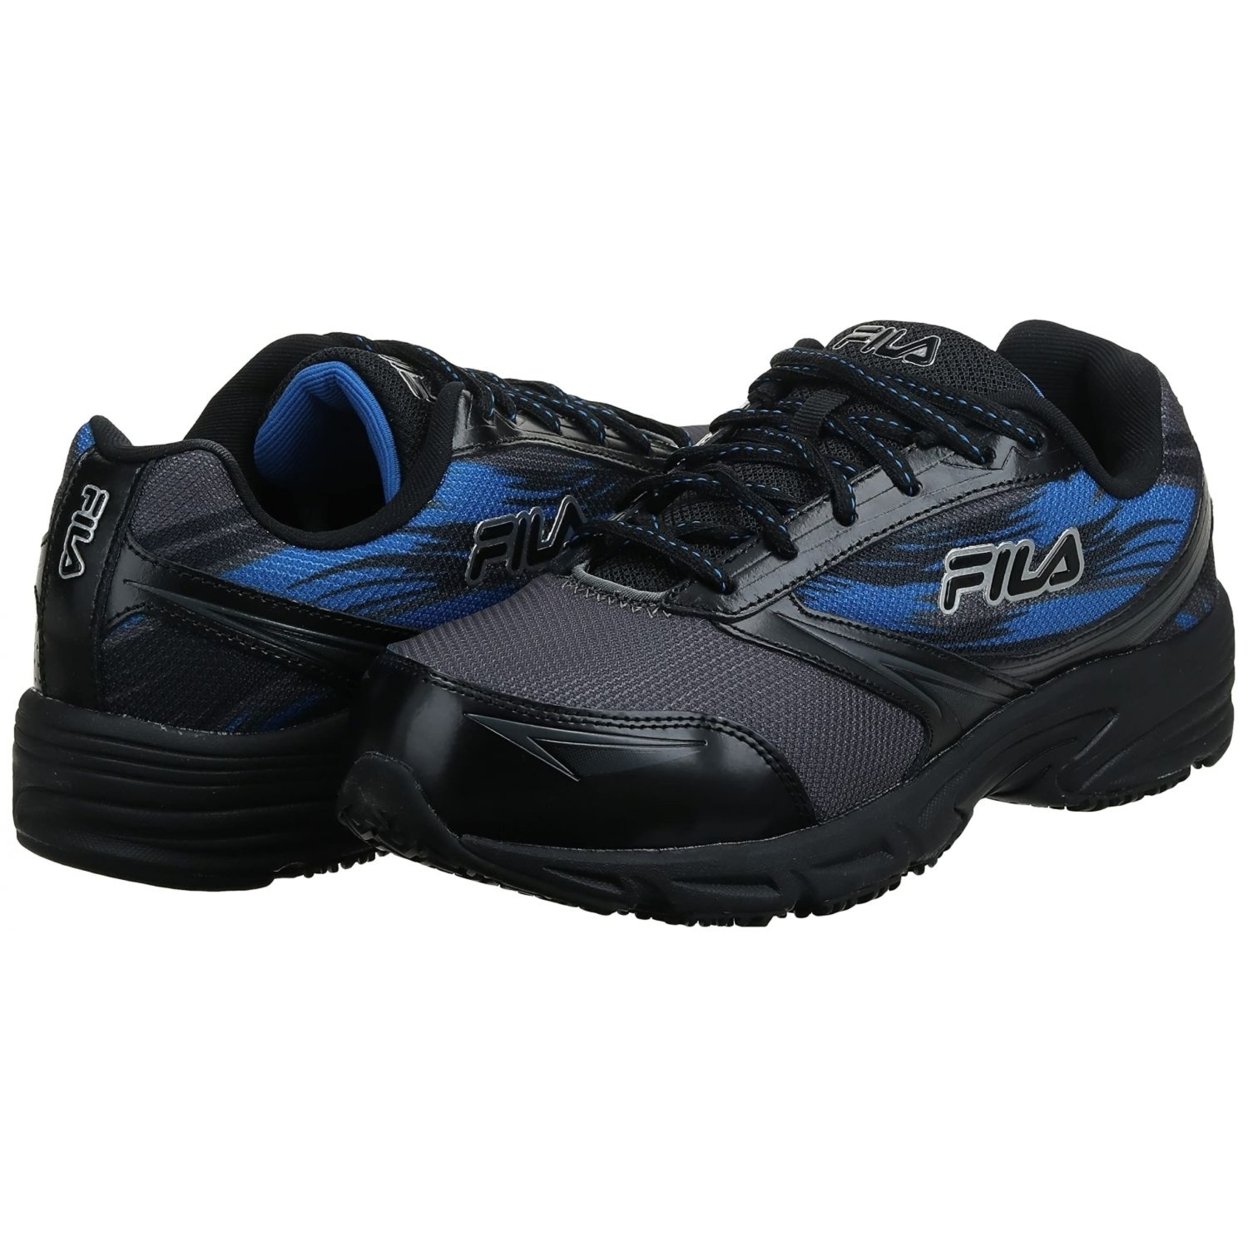 Fila Menâs Memory Meiera 2 Slip Resistant And Composite Toe Work Shoe CSRK/BLK/PRBL - Castlerock/Black/Prince Blue, 10